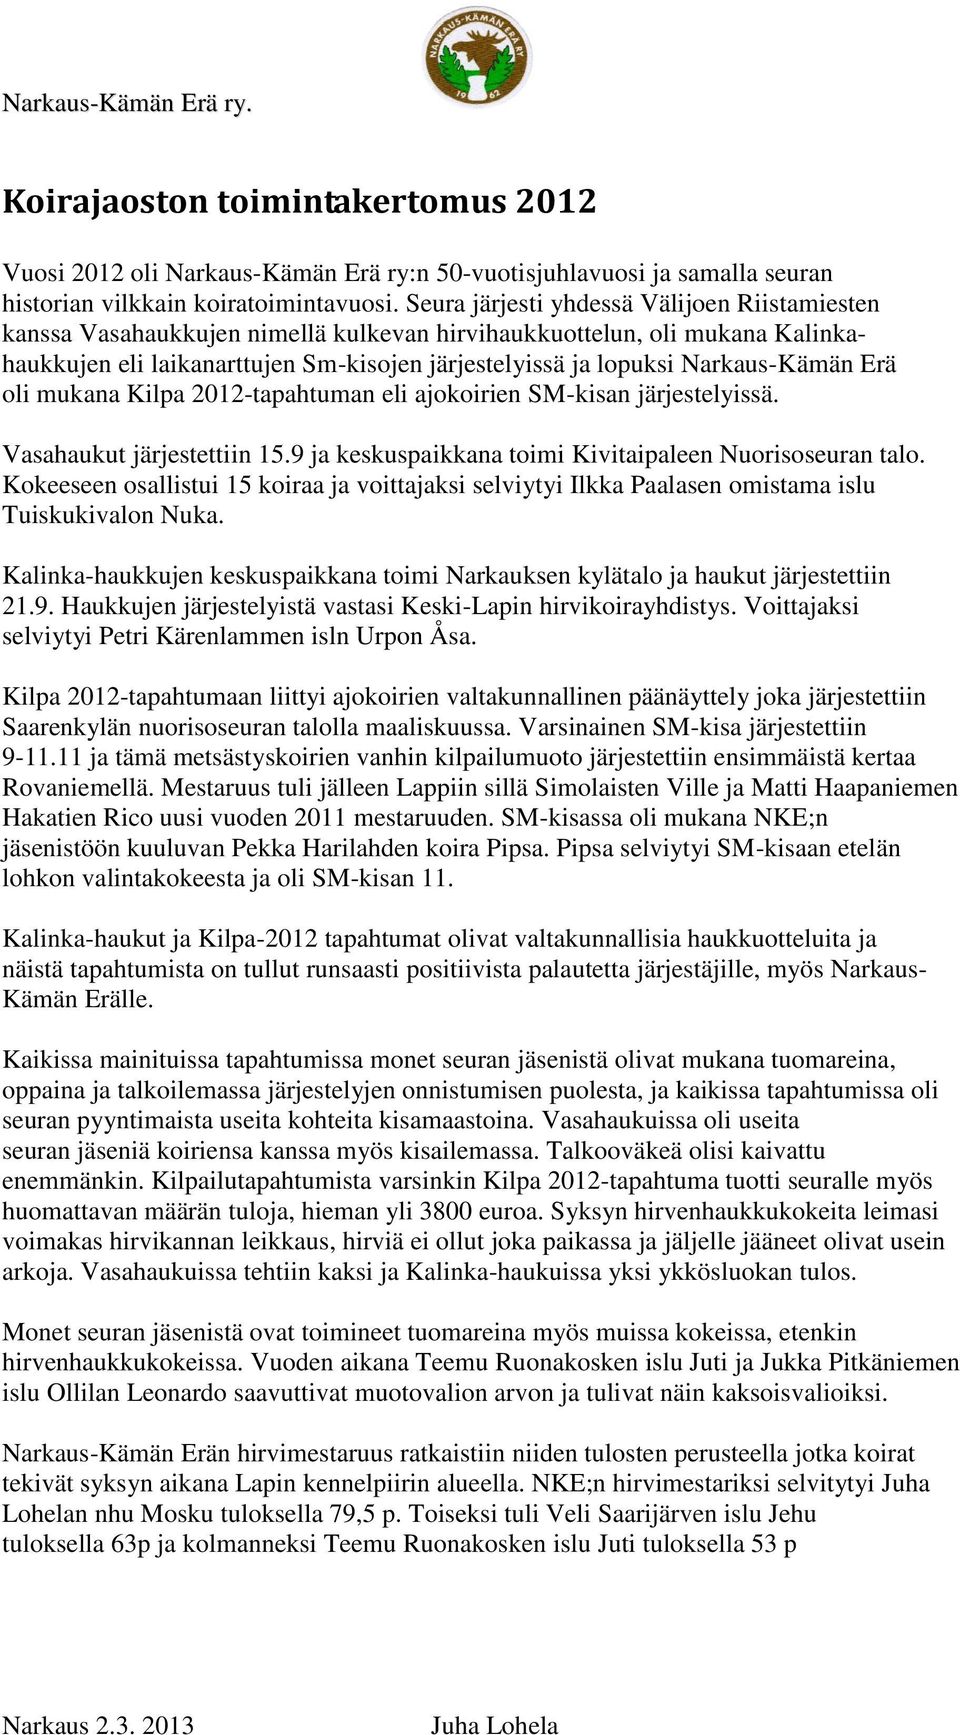 Narkaus-Kämän Erä oli mukana Kilpa 2012-tapahtuman eli ajokoirien SM-kisan järjestelyissä. Vasahaukut järjestettiin 15.9 ja keskuspaikkana toimi Kivitaipaleen Nuorisoseuran talo.